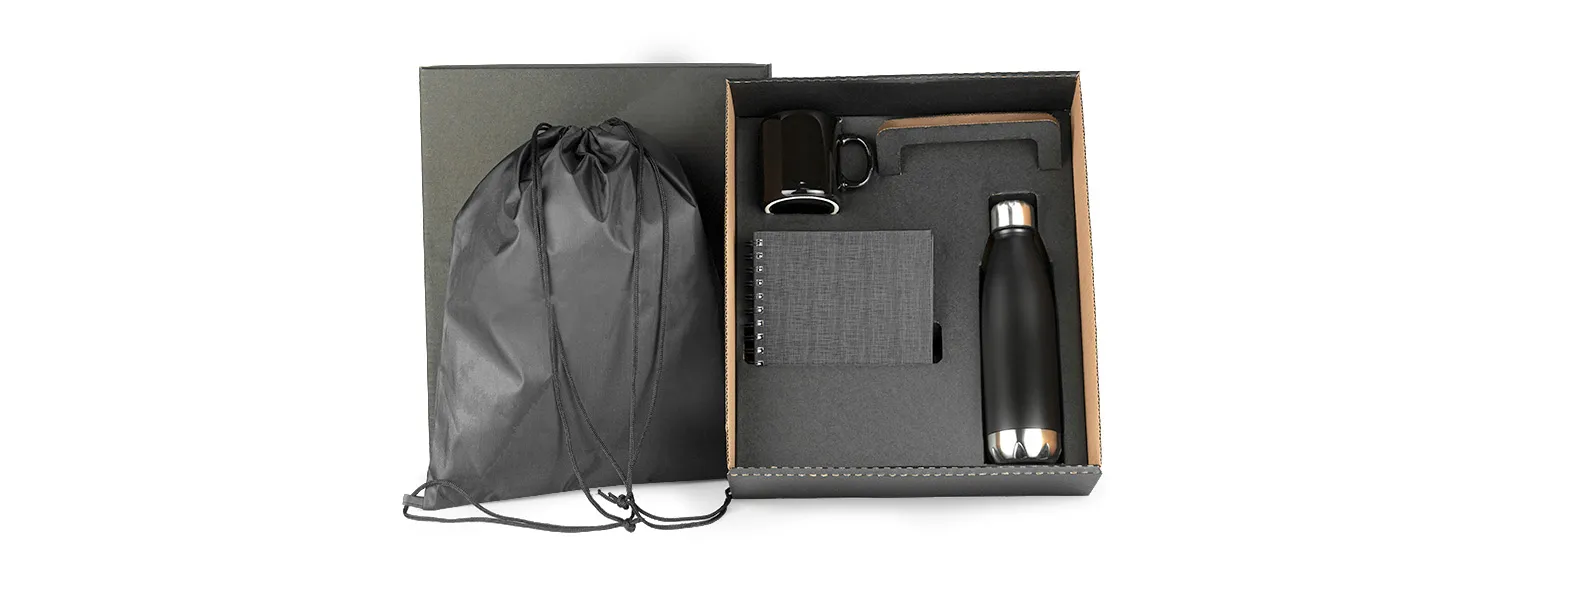 Kit composto por mochila sacola preta em Nylon 210D, caderno para anotações wire-o preto com capa dura revestida em percalux linho, caneca em cerâmica preta e garrafa em aço Inox preta com tampa rosqueável.